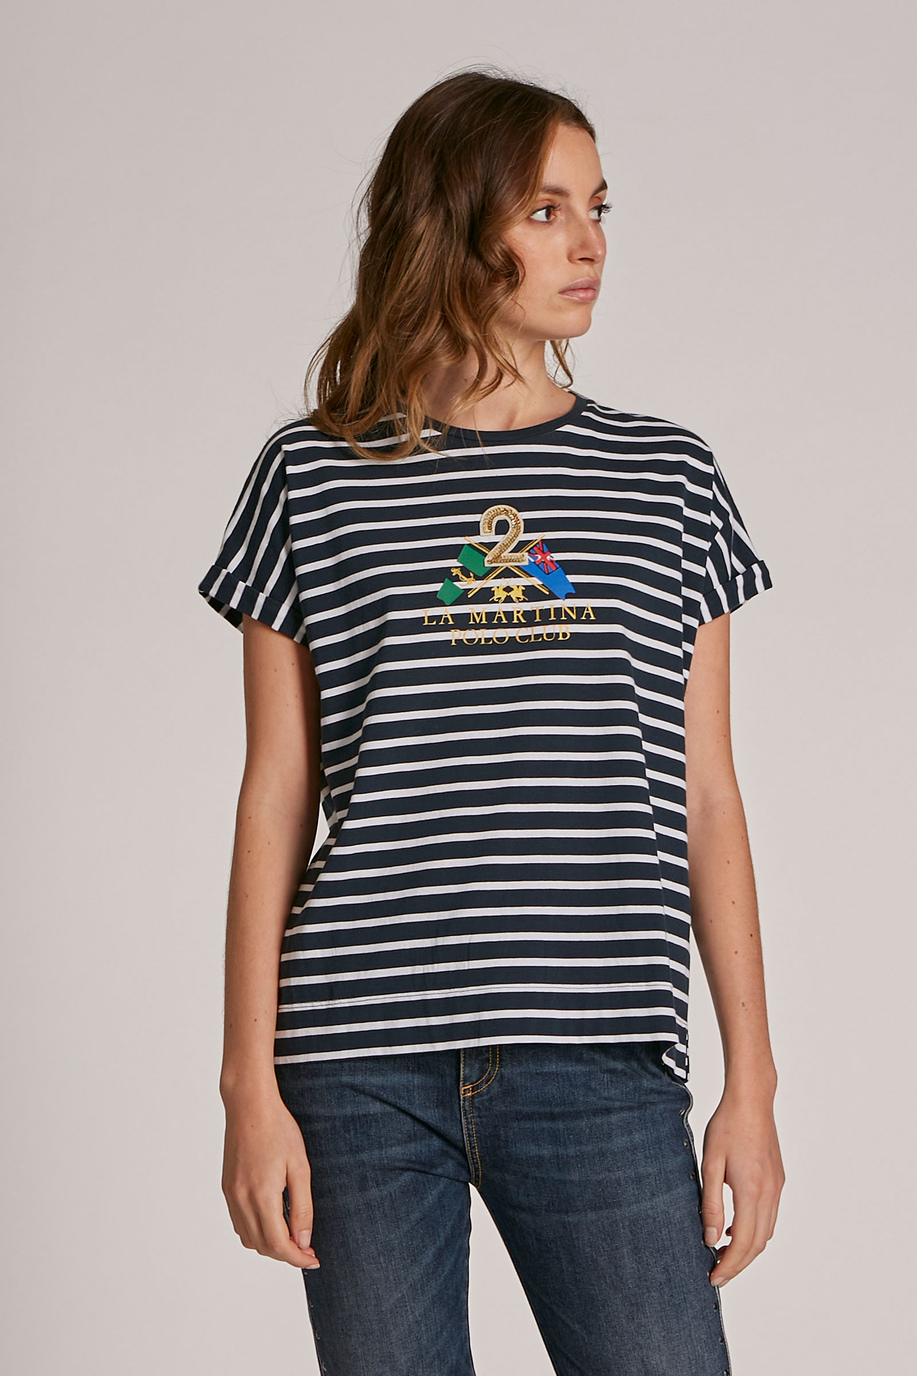 Camiseta de mujer de algodón con logotipo, modelo holgado - Mujer | La Martina - Official Online Shop